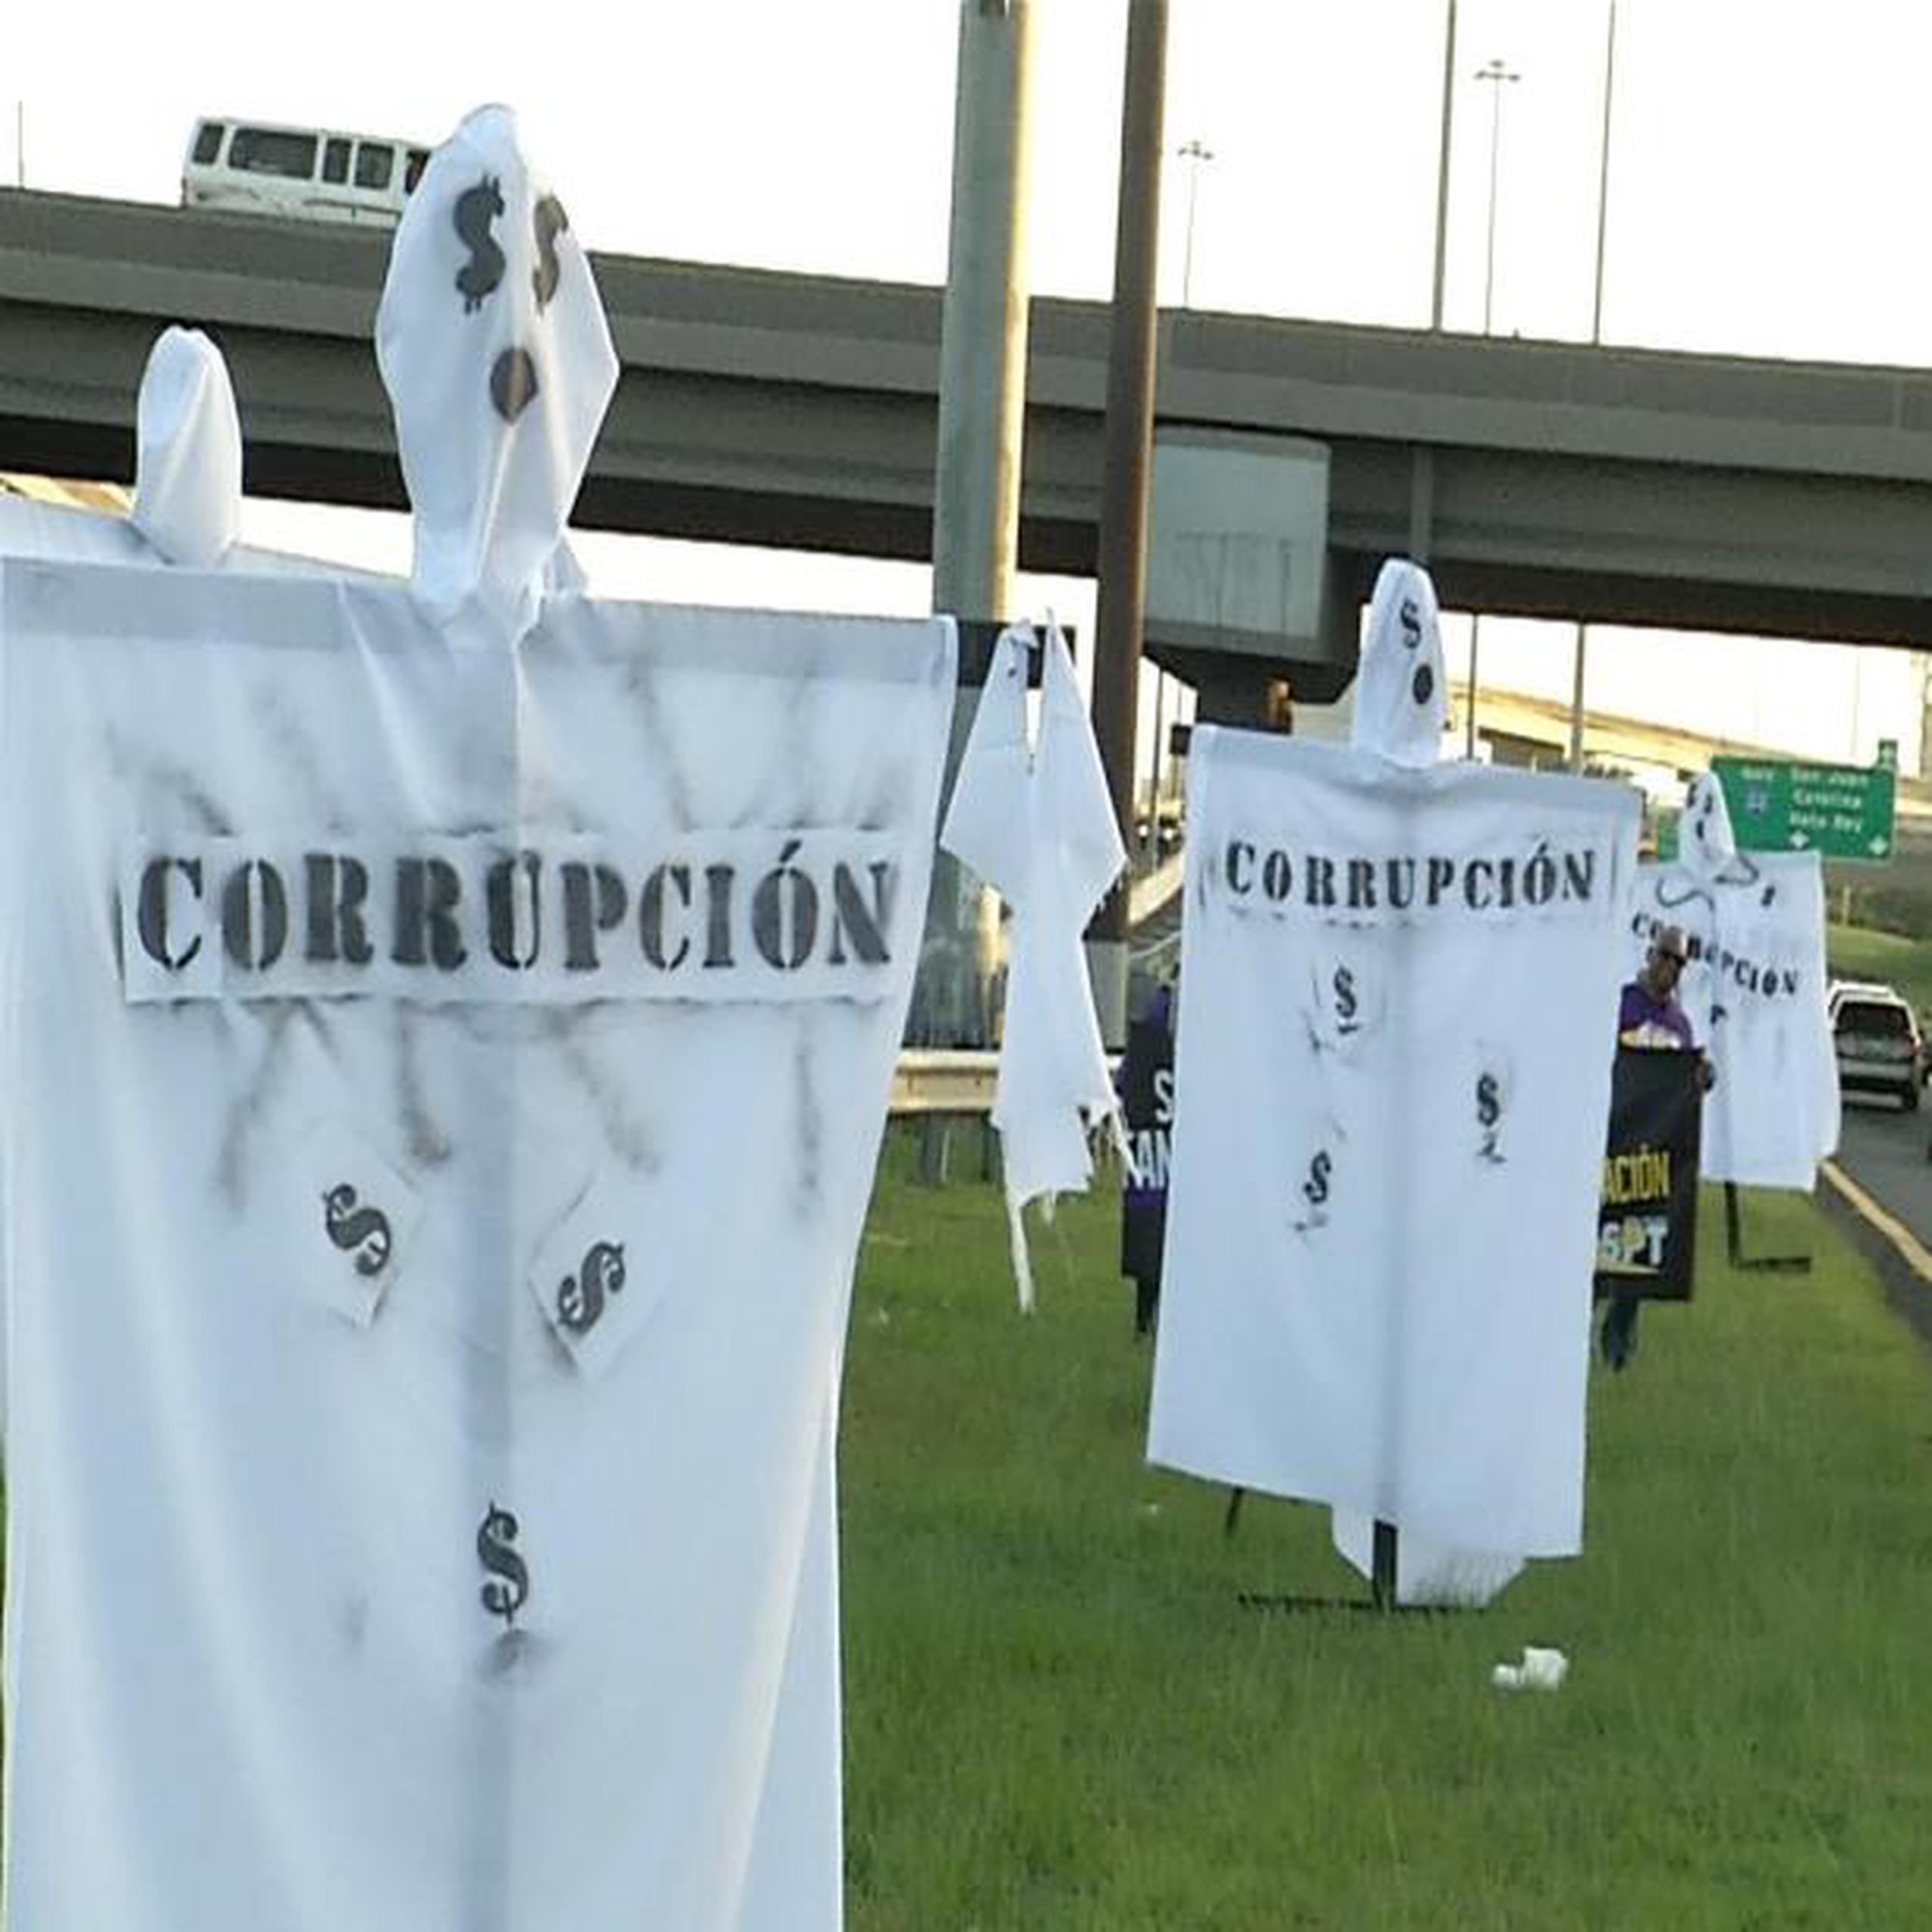 El llamado en sus letras sobre sábanas blancas, que simulaban ser fantasmas, leía "corrupción". (Suministrada)